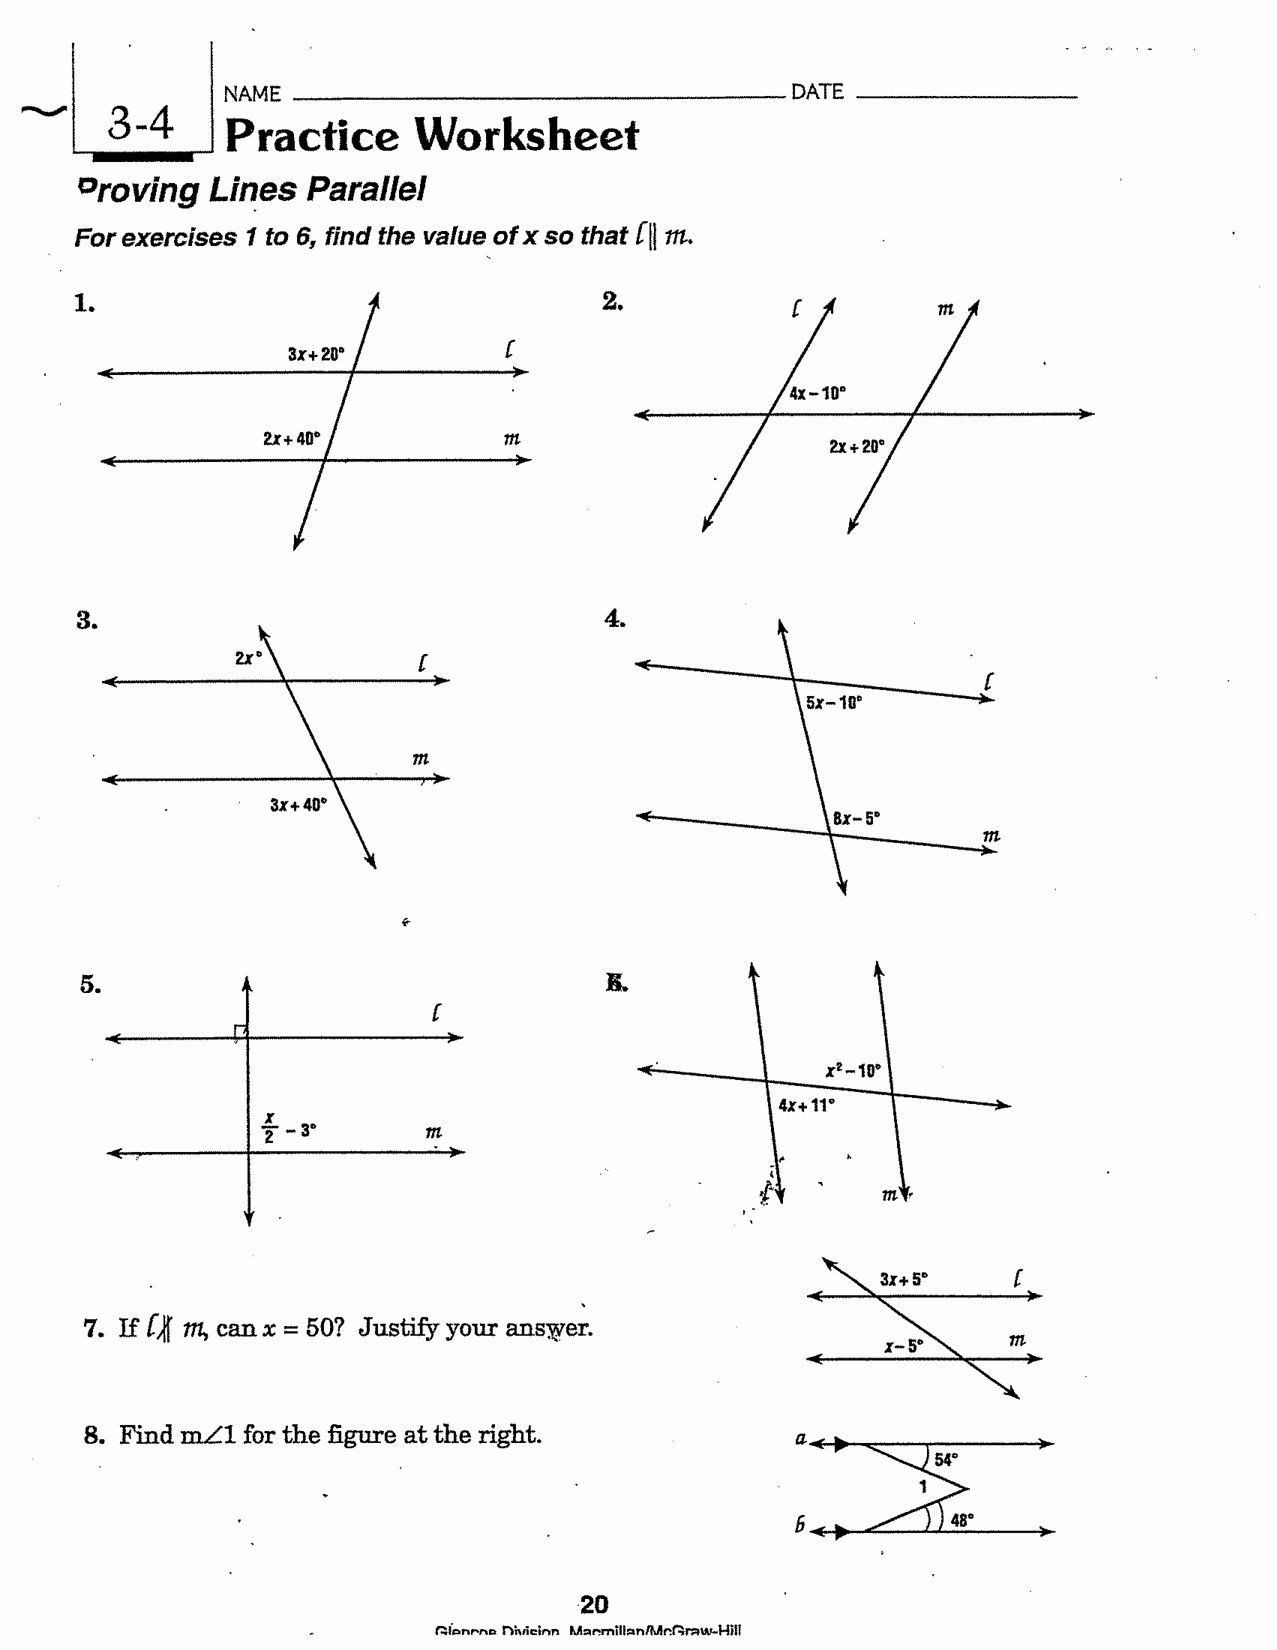 Proving Lines Parallel Worksheet Pin On Printable Blank Worksheet Template